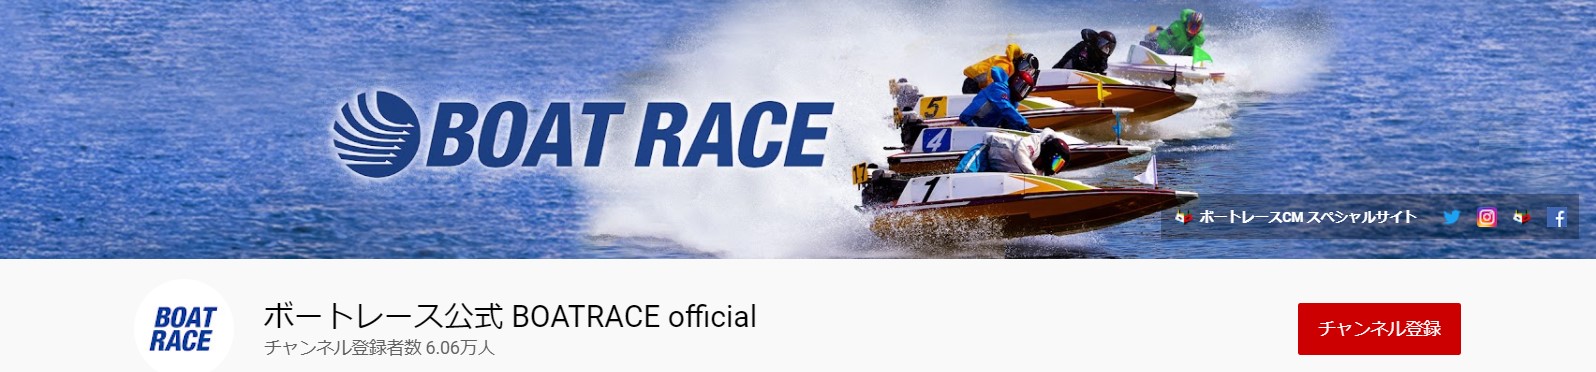 ボートレース公式 BOATRACE officaialnoのYoutubeチャンネル画像